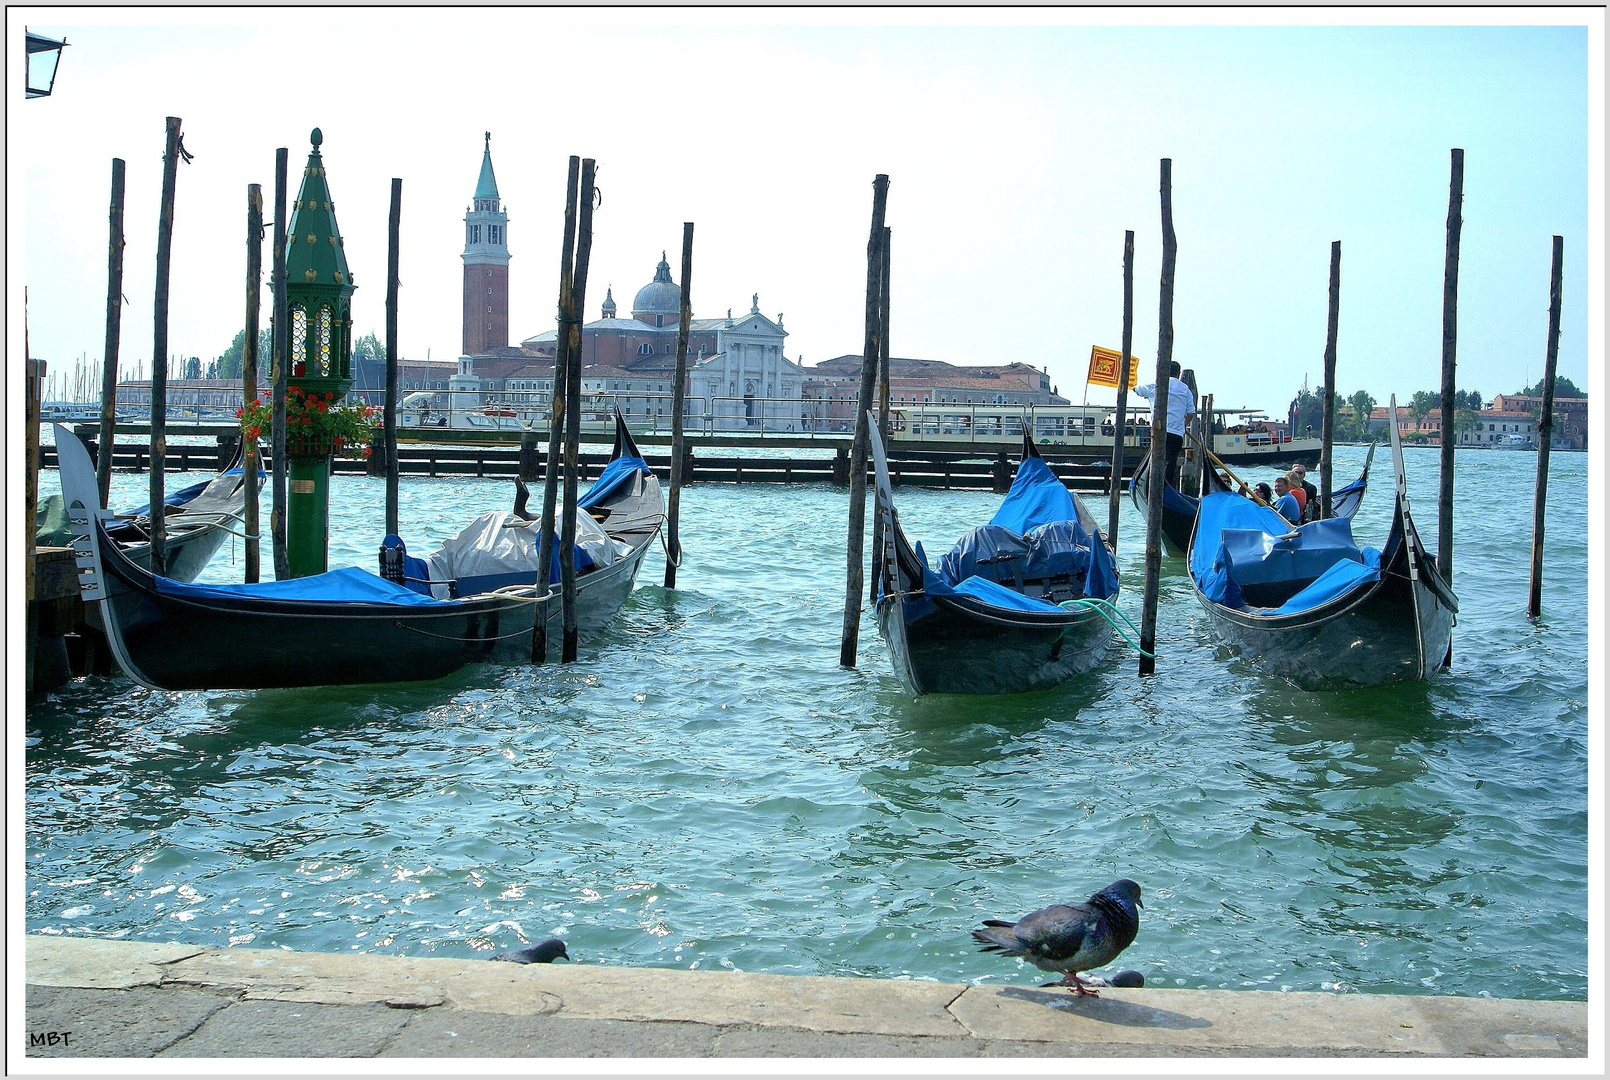 Pigeon, Gondole, canal : Venise